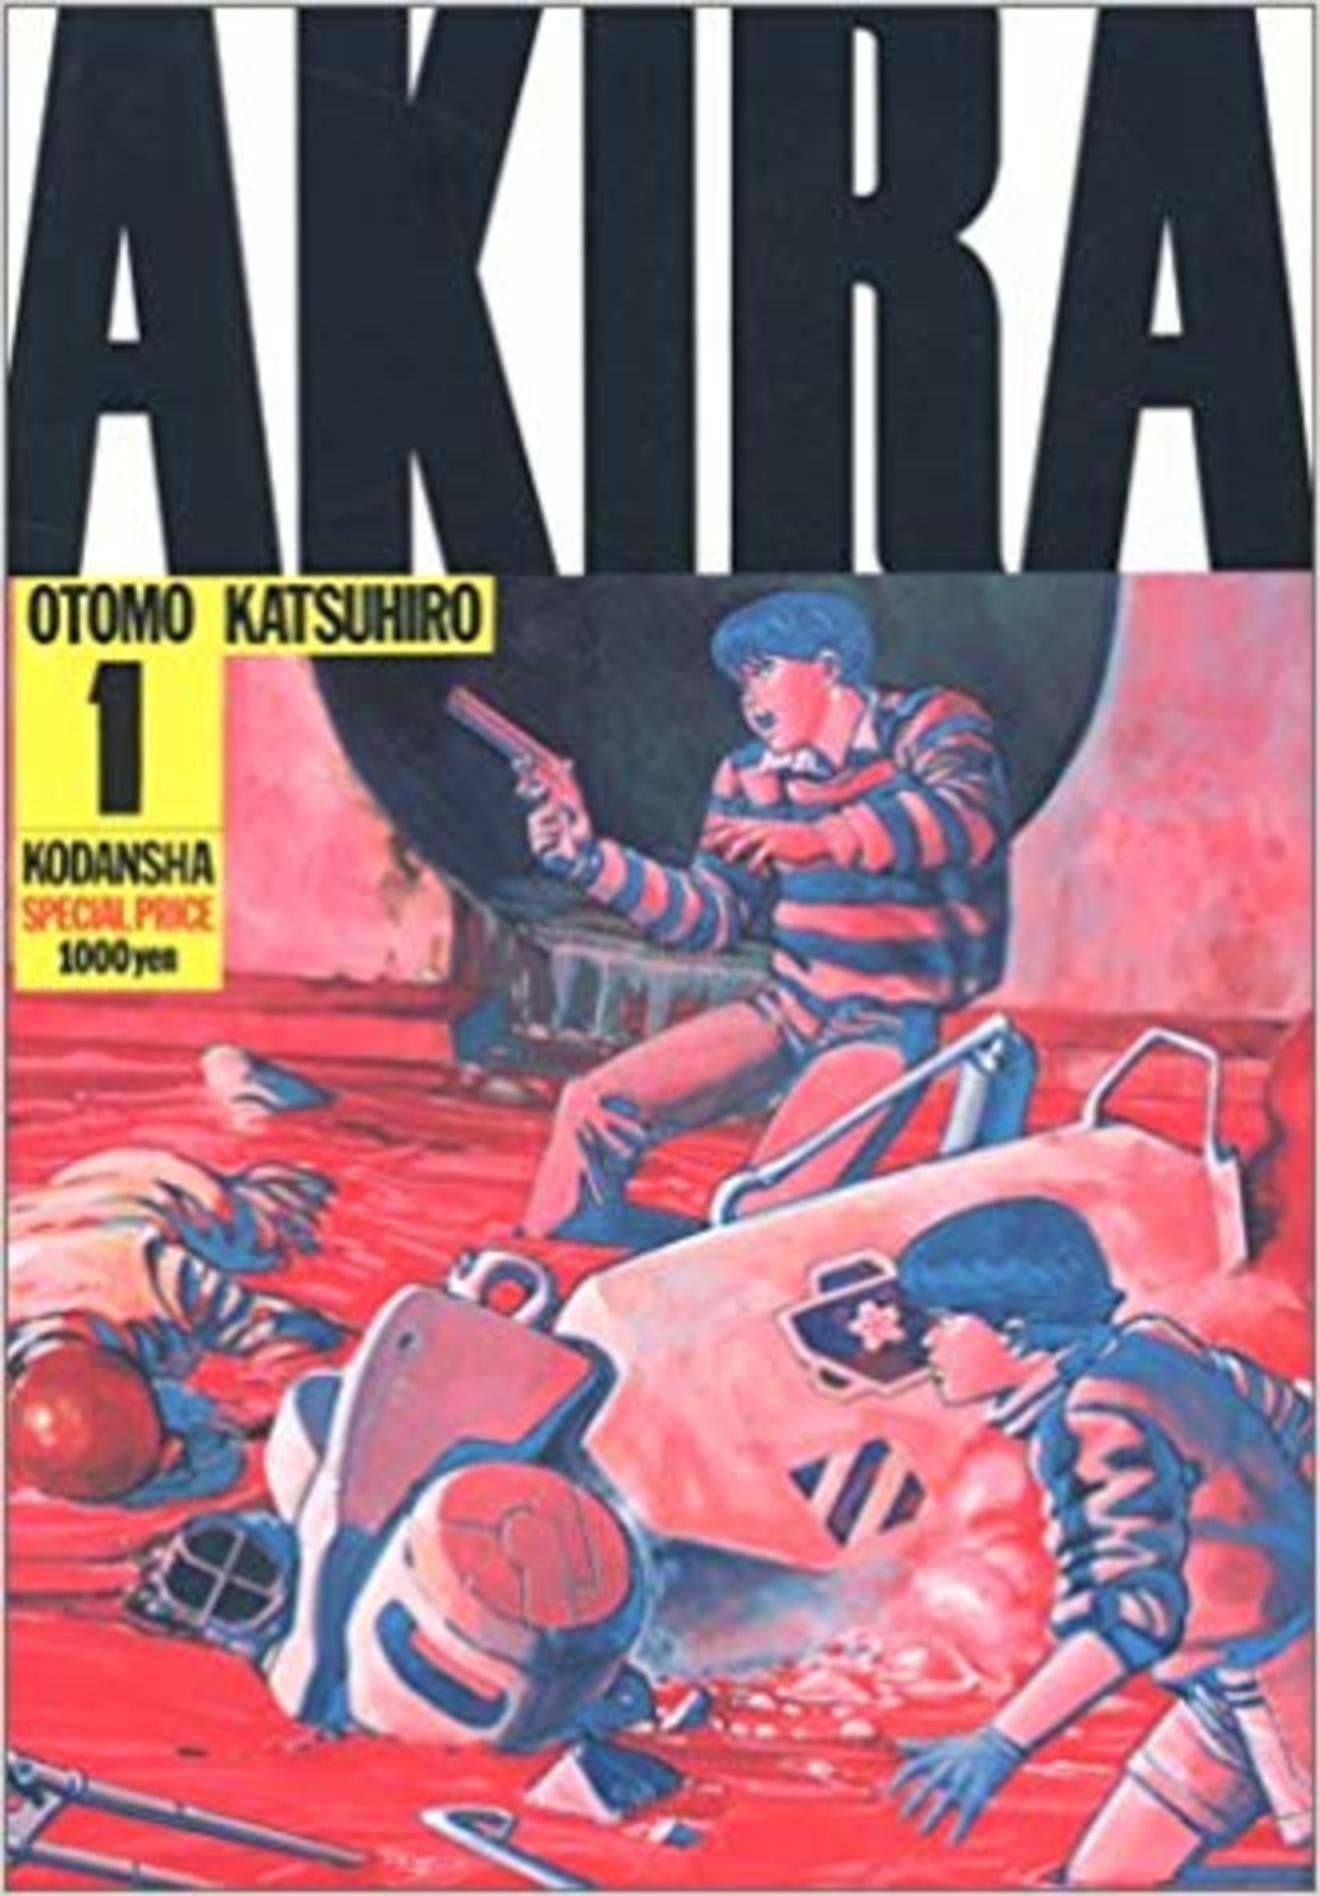 漫画 Akira 面白さを全巻の名言から考察 あらすじも ネタバレ注意